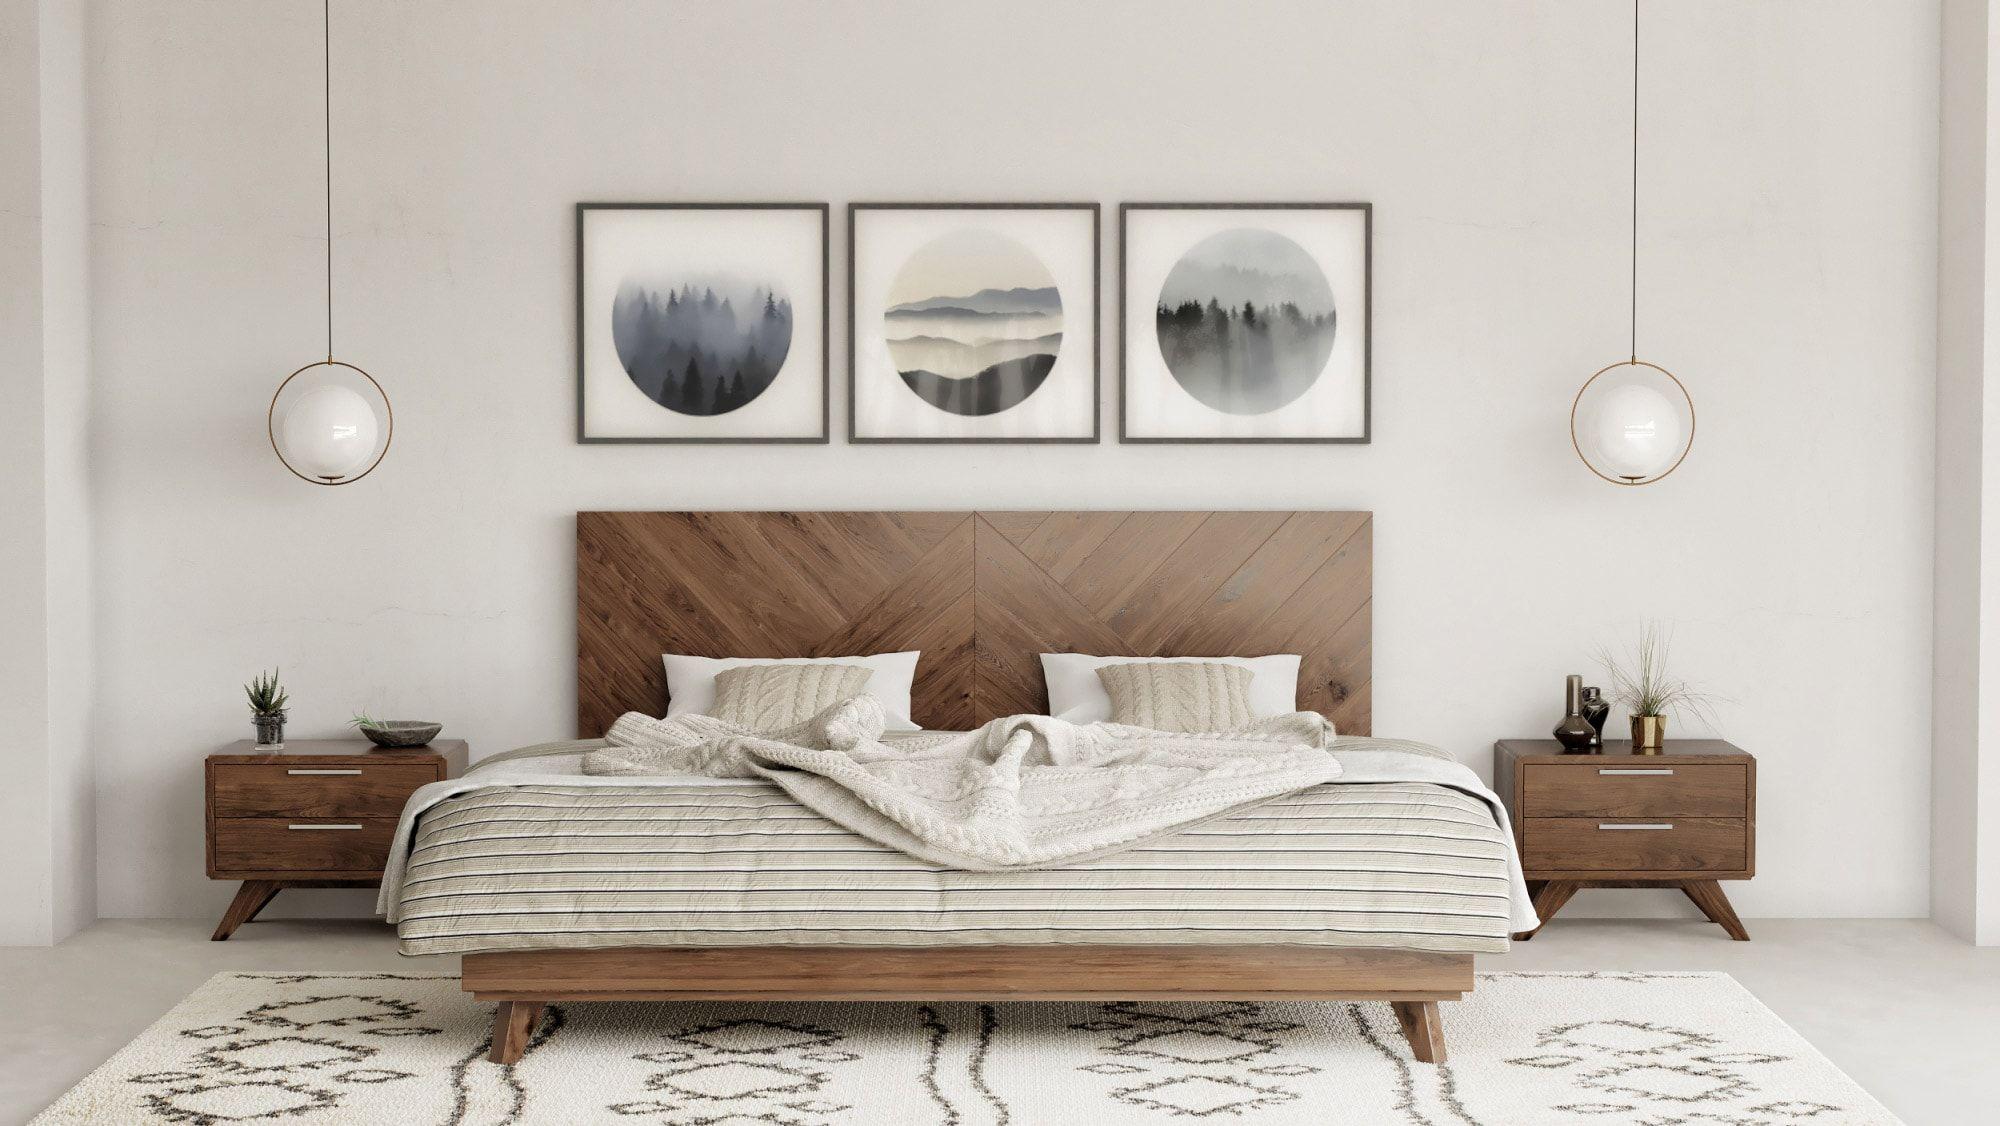 

    
Walnut Queen Size Panel Bedroom Set by VIG Nova Domus Soren
